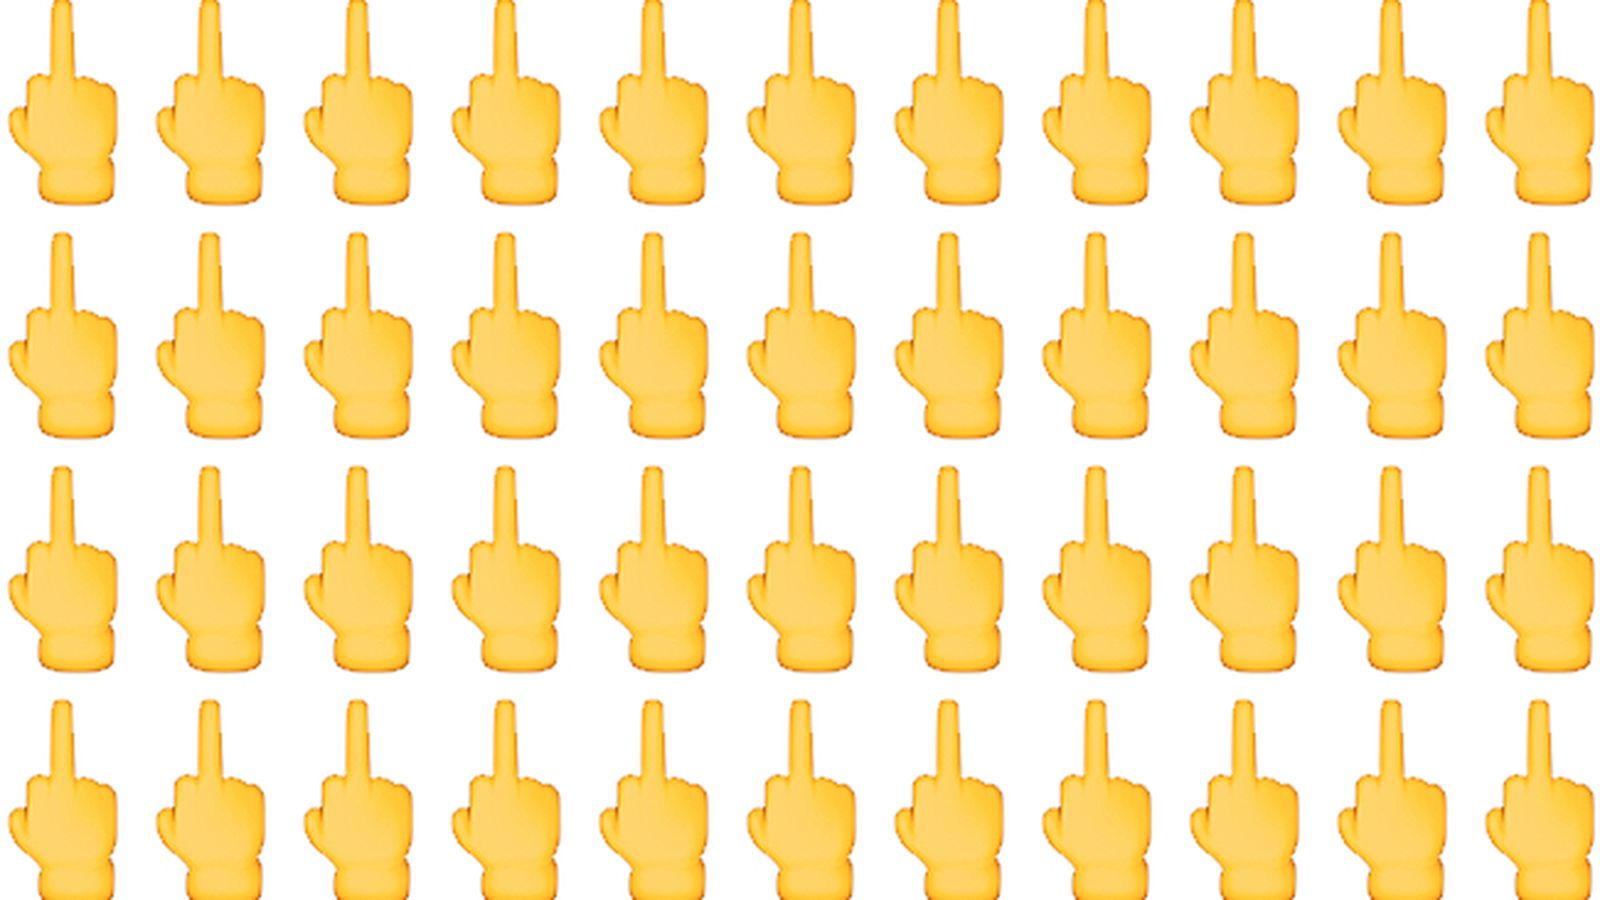 醫學專家不滿！全新Emoji 「竪中指」圖案反生理學！